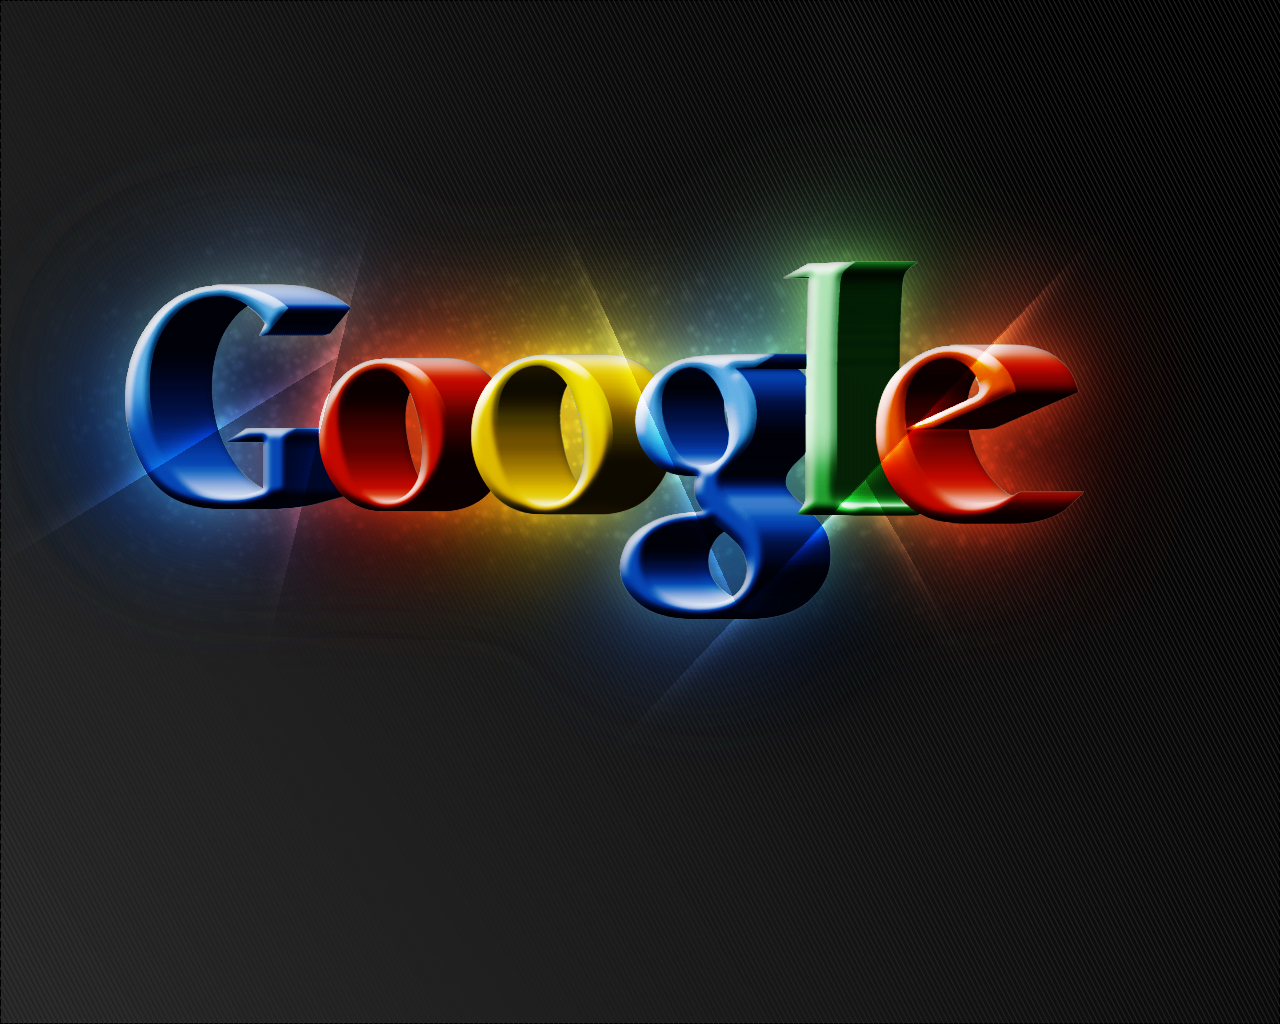 У Google за 3 квартал доходы увеличились на 33%